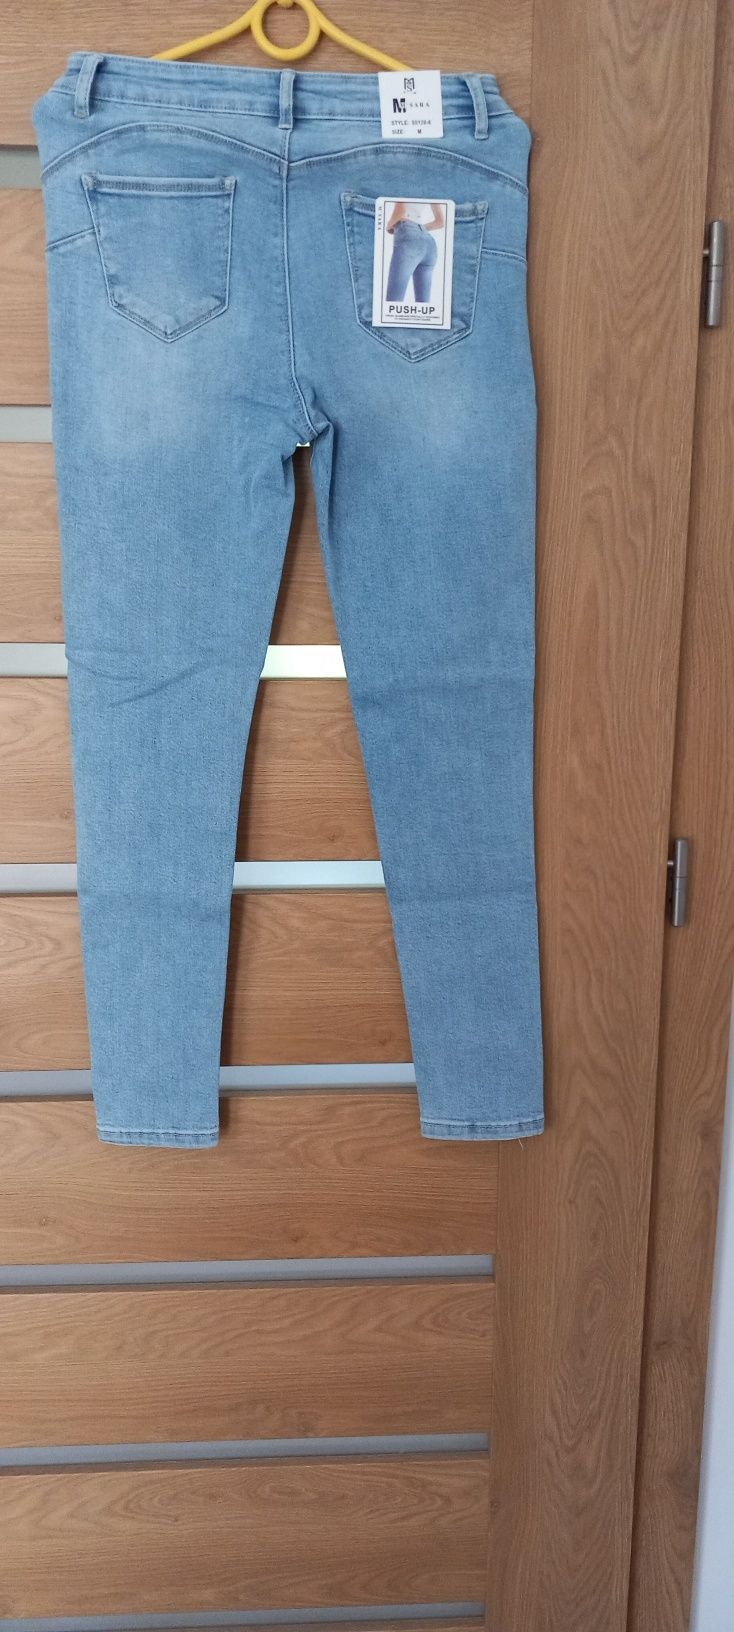 NOWE 29 38/M Msara spodnie jeansy dzinsy skinny rurki push up błękitne